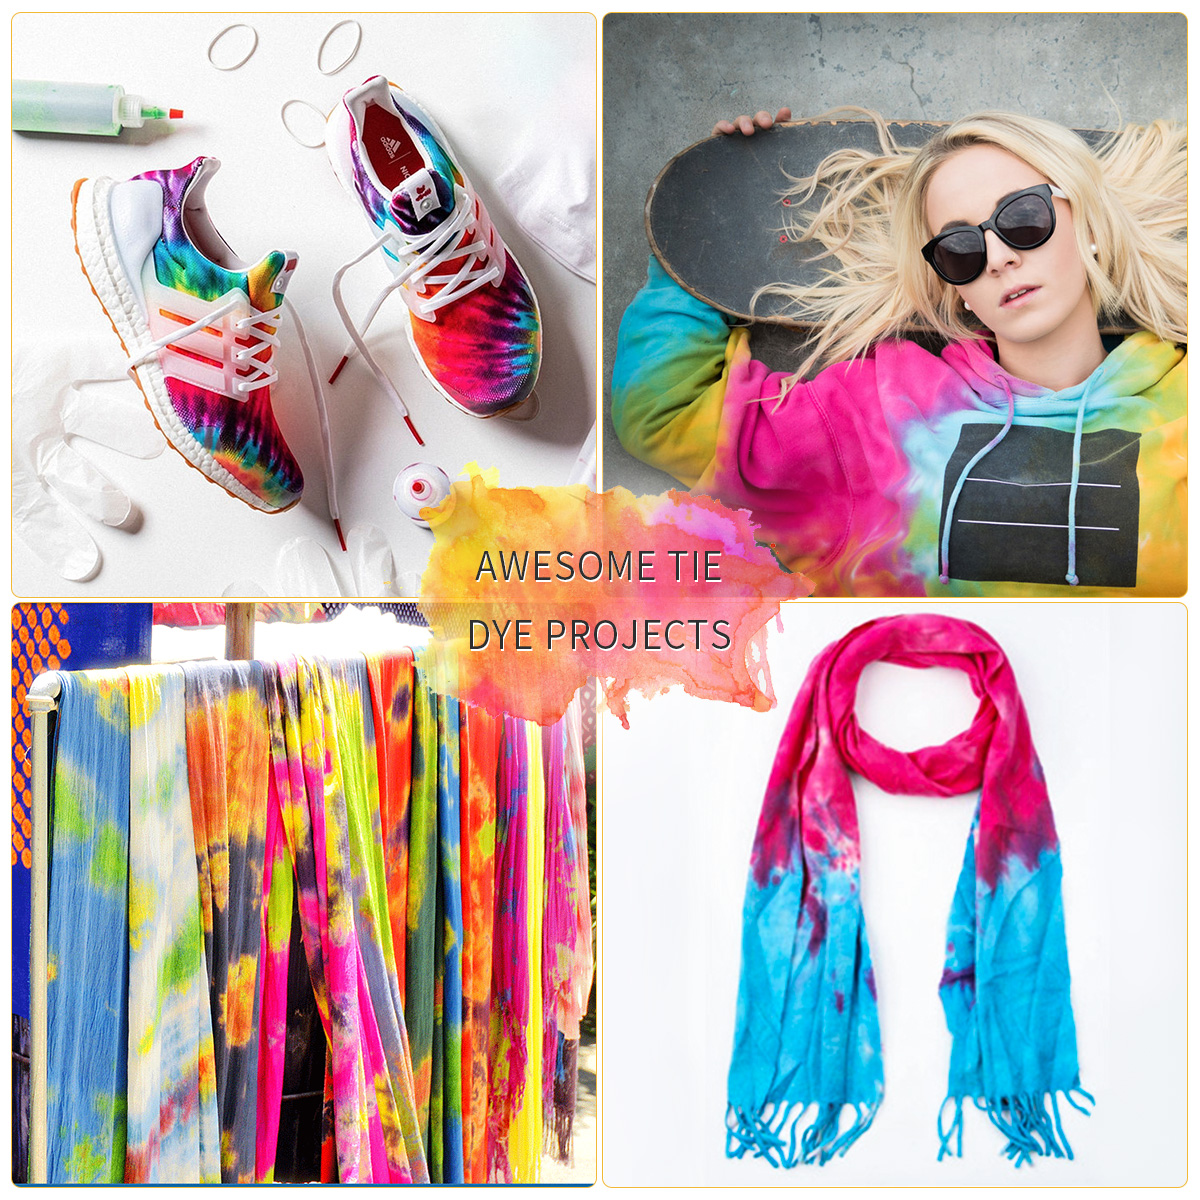 Tie-Dye-DIY-Kit-5-Colors-Fabric-Textile-Shirts-Paints-Permanent-Paint-for-Clothes-Shirt-Dress-Homema-1906746-15